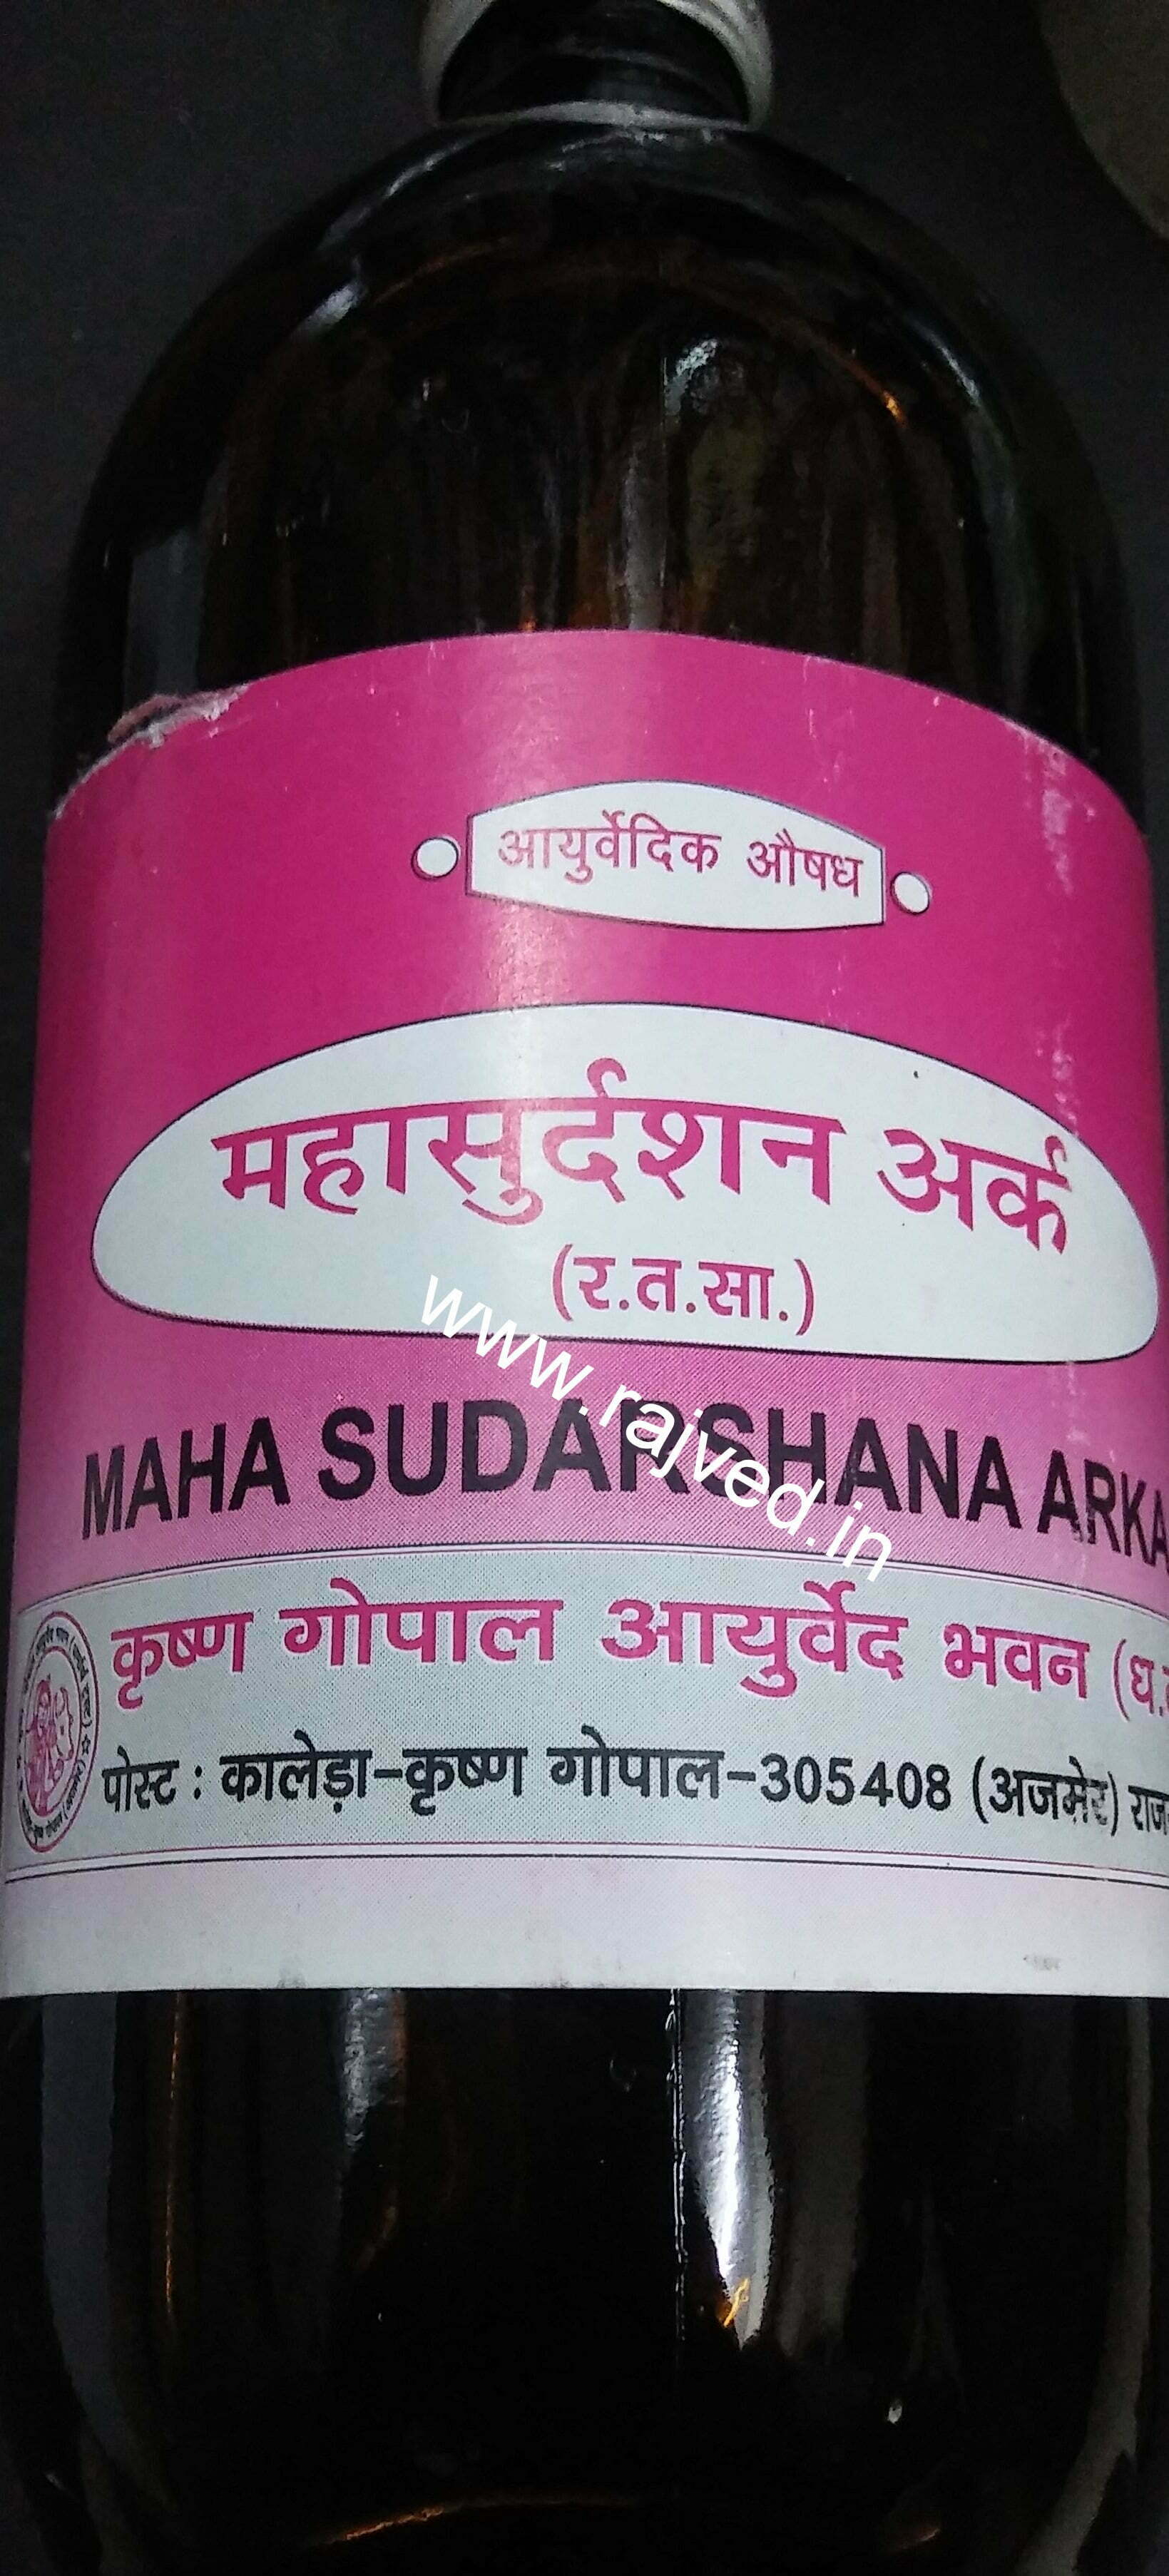 mahasudarshan ark 450 ml krishna gopal ayurved bhavan